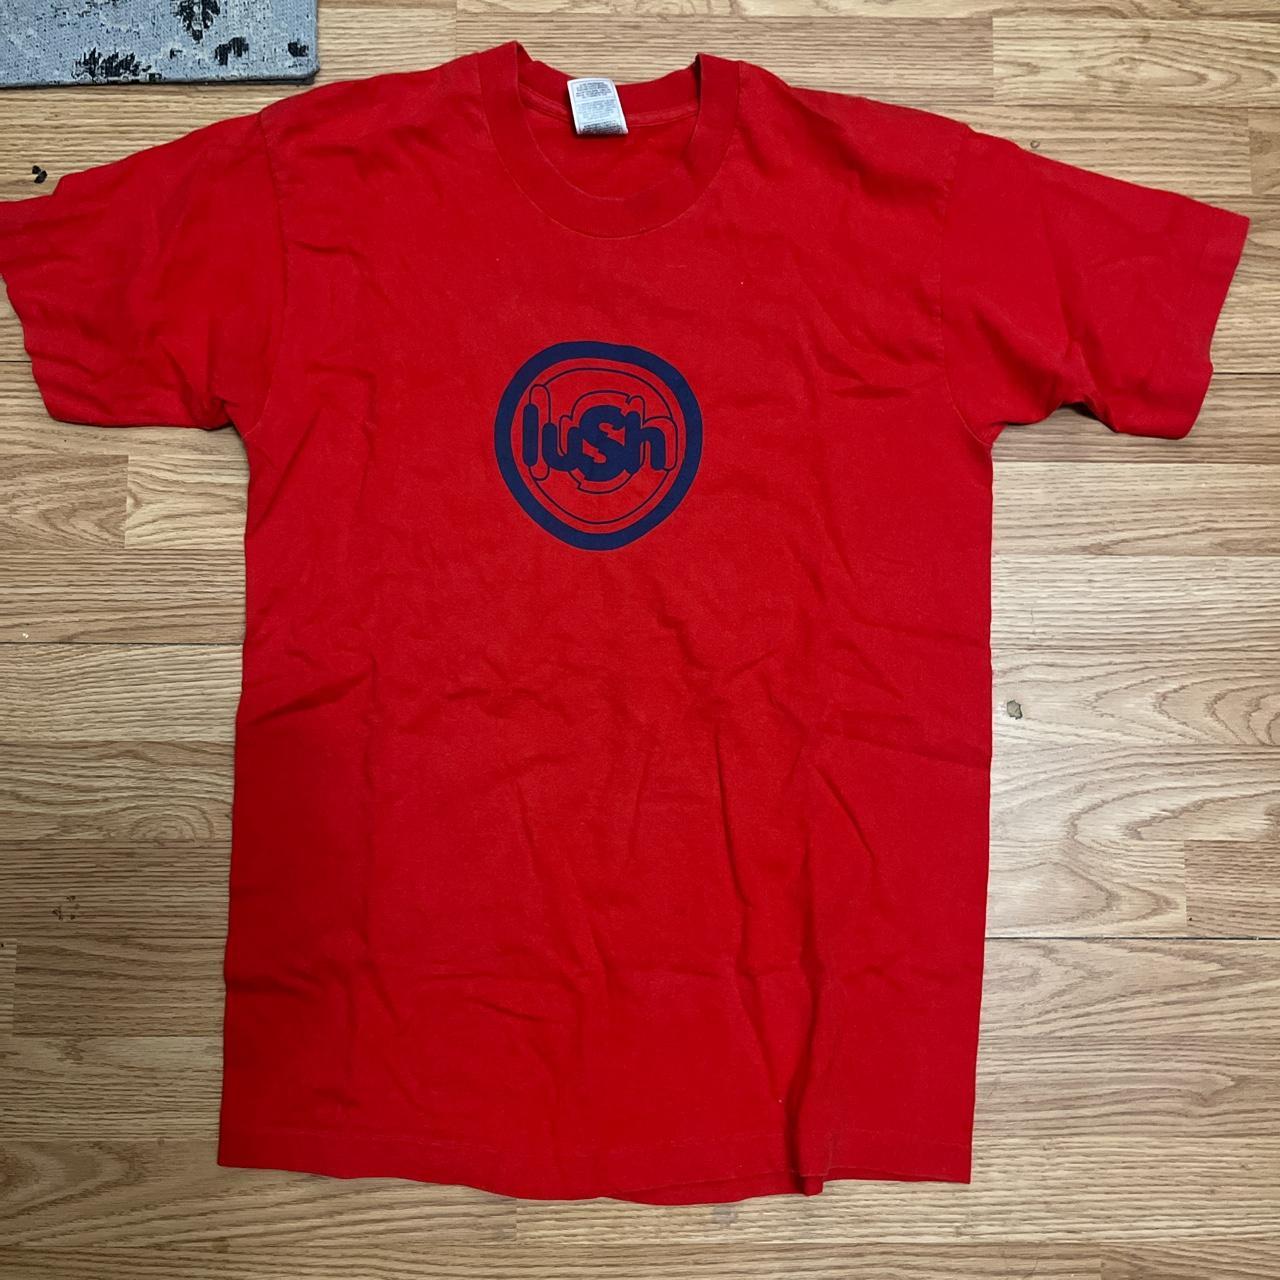 LUSH shaving the pavement ‘96 tour shirt LARGE: lush... - Depop